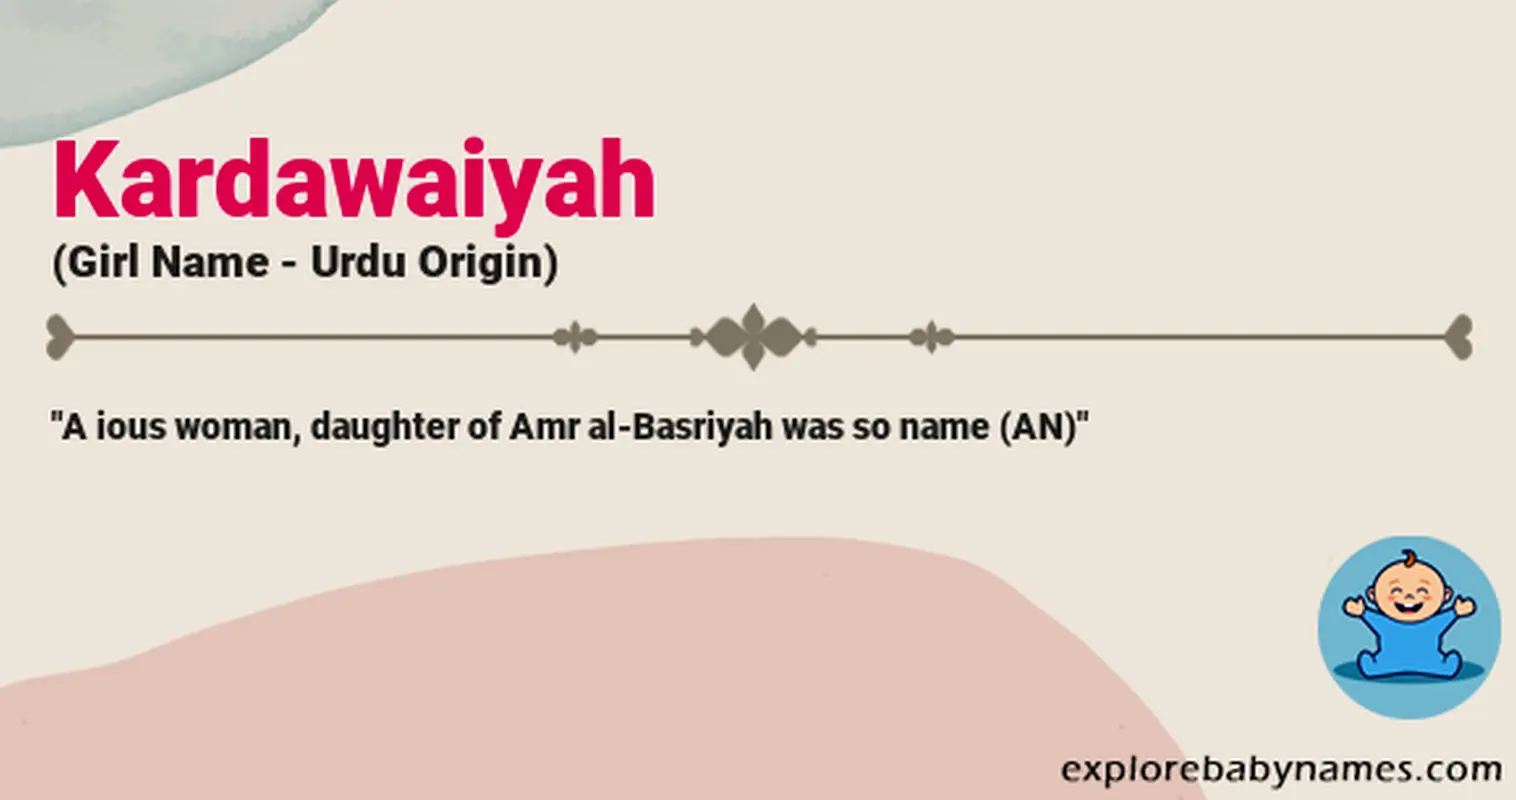 Meaning of Kardawaiyah